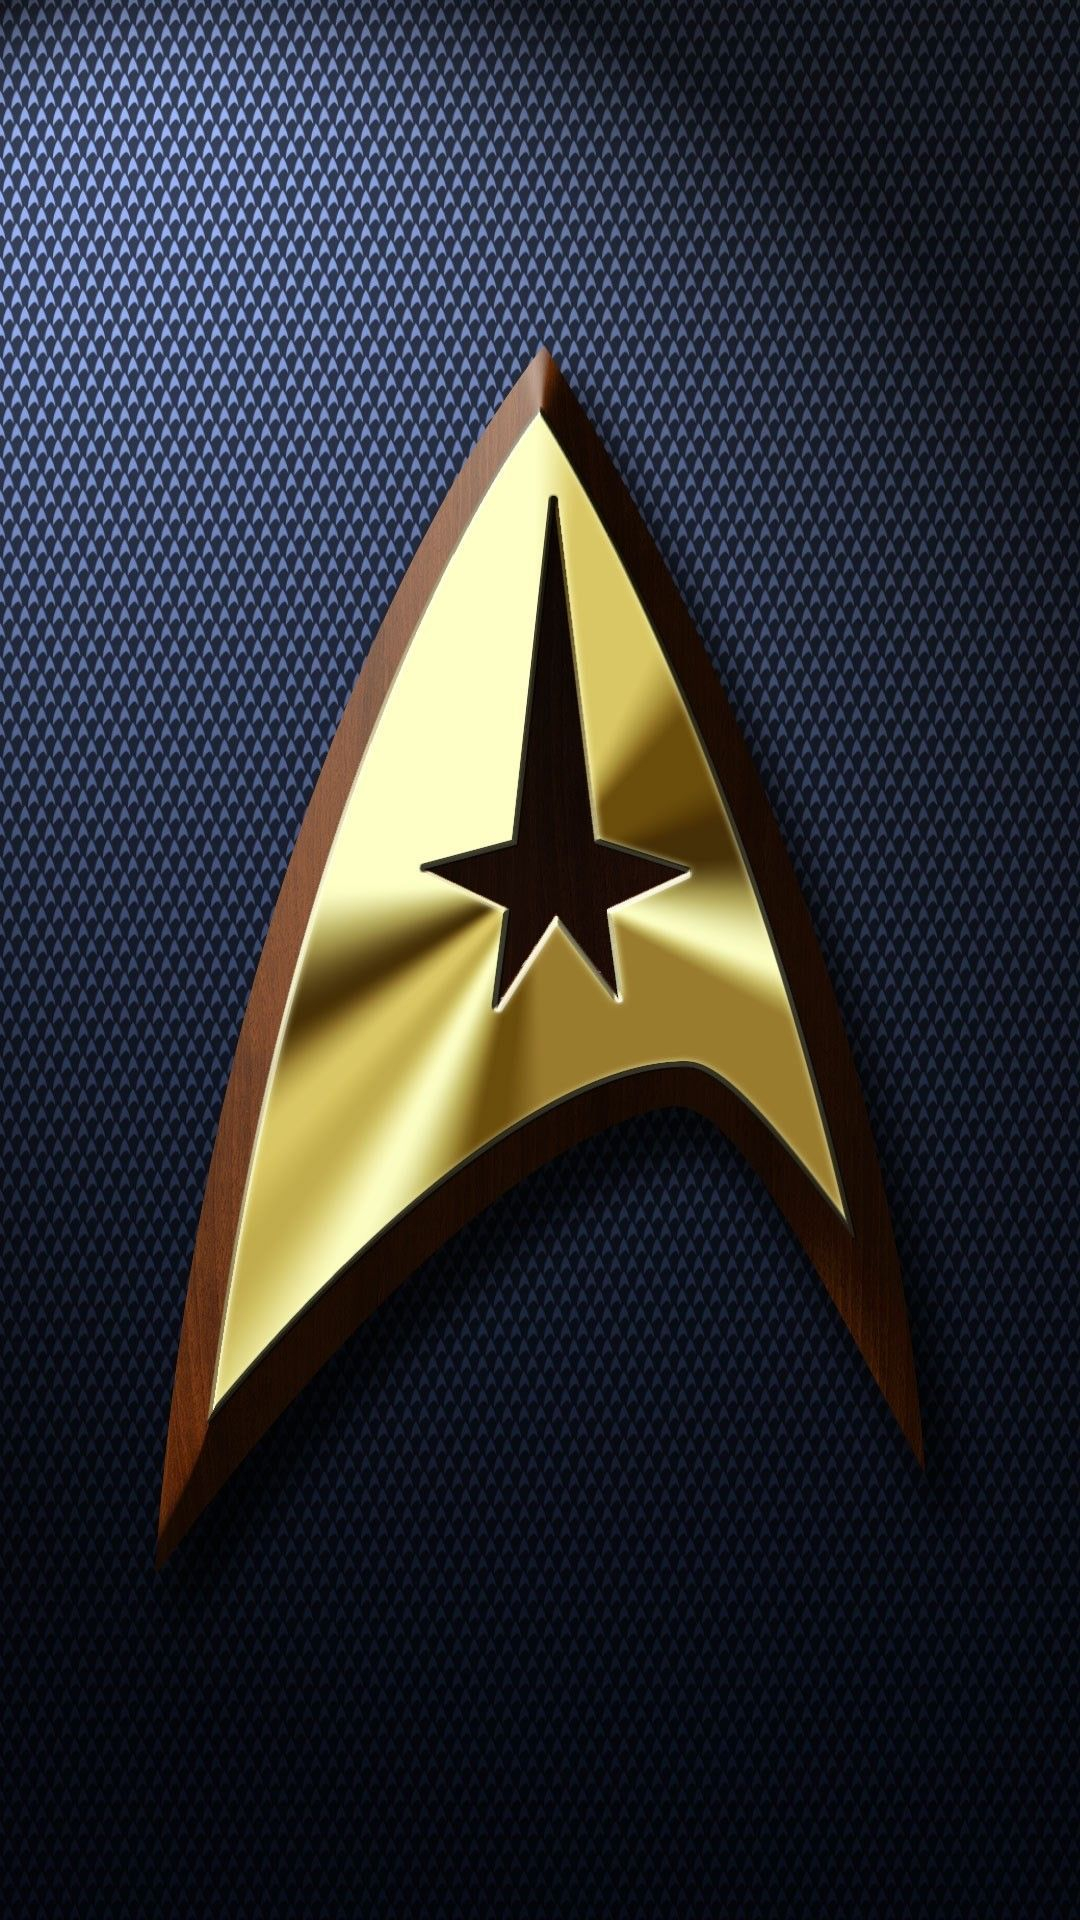 1080x1920 45+ Star Trek Phone Wallpapers Download at WallpaperBro | Star trek wallpaper, Star trek art, Star trek wallpaper iphone